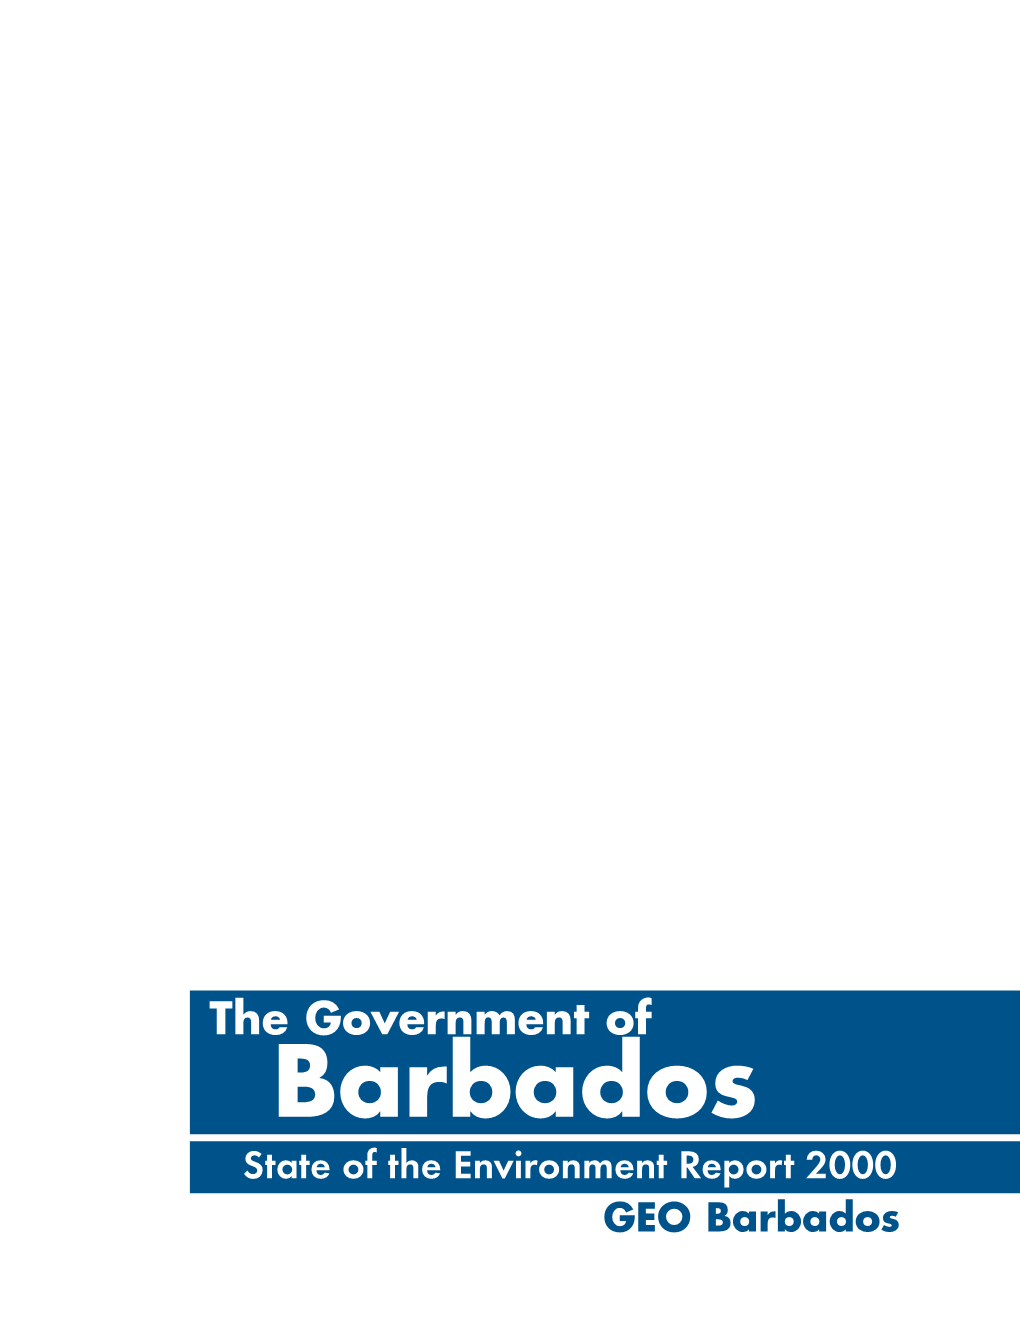 001 Barbados Introduccion